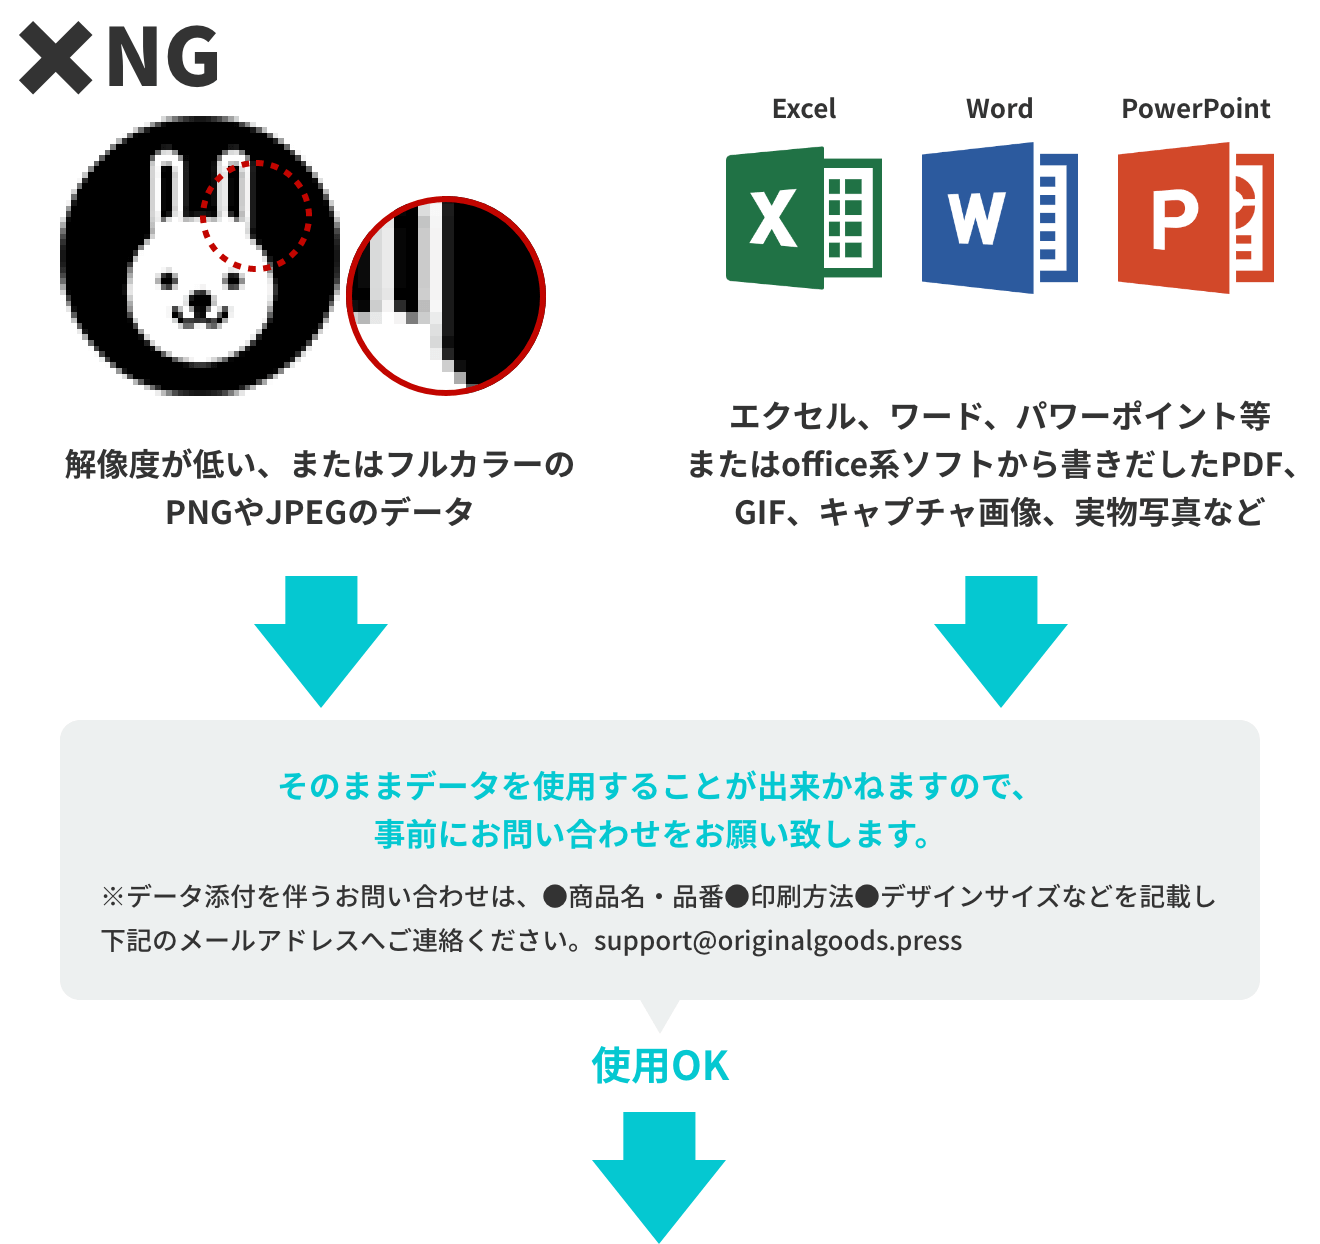 NG　解像度が低い、またはフルカラーのPNGやJEPGのデータ、office系のソフトから書き出したPDF、GIF、キャプチャ画像、実物写真など